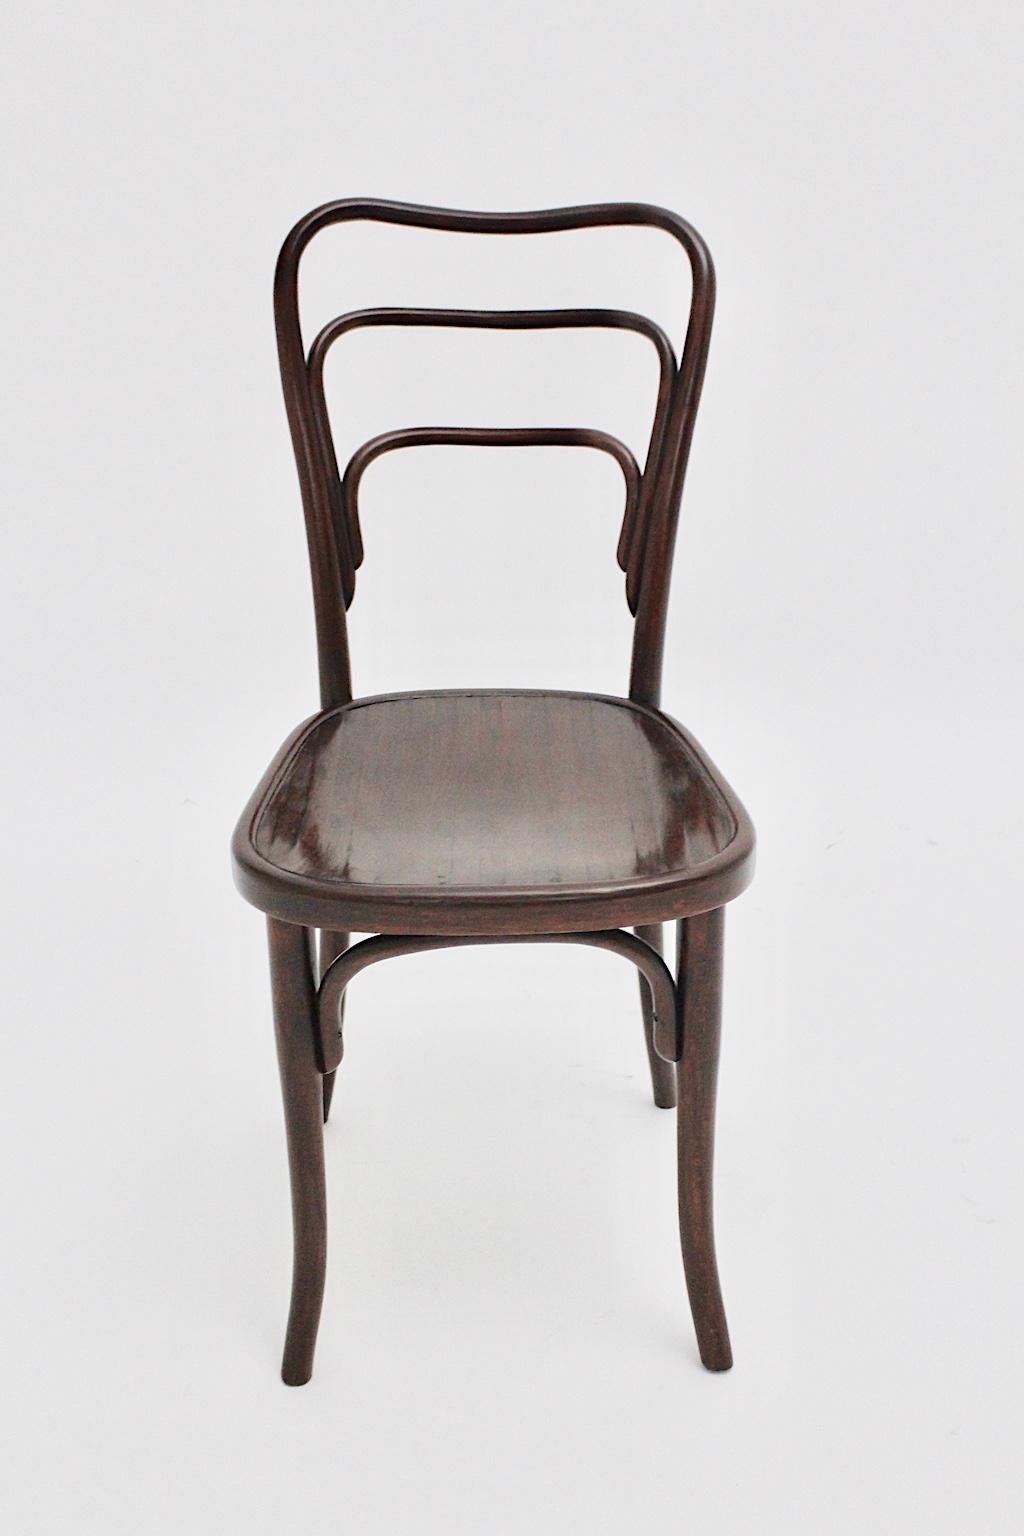 Der Jugendstil-Bugholzstuhl Modell Nr. 249 a von J. & J. Kohn ist eine Variante des von Adolf Loos für das Famed Cafe Museum im Herzen von Wien entworfenen Innenraumstuhls.
Der Stuhl wurde aus Bugholz gefertigt, die Sitzfläche aus Sperrholz. Es ist